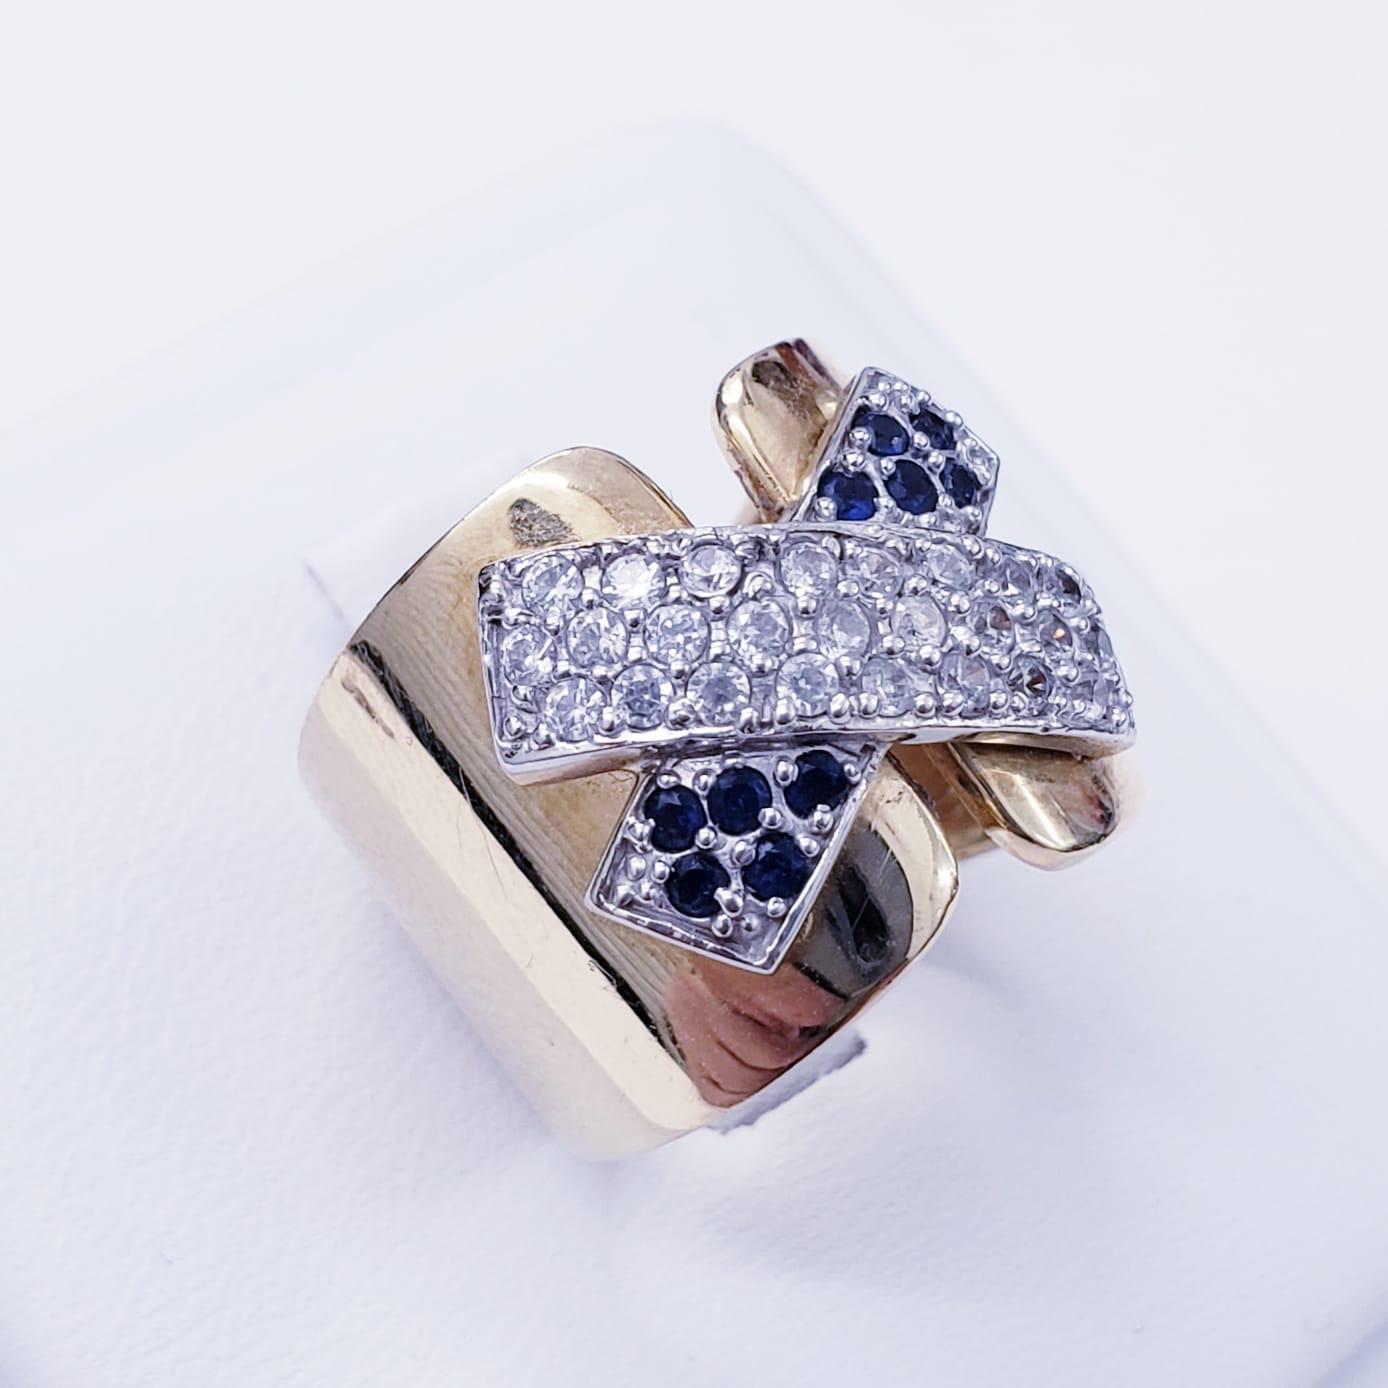 Vintage 0,70ct Diamant & Saphir X Patch Design 18k Gold Ring. Der Ring verfügt über Diamanten ca. Gesamtgewicht 0,50 Karat & ca. 0,20 Karat blauen Saphiren. Der Ring misst 14,5 mm von 16 mm und ist eine Größe 5. Der Ring wiegt 7,8 Gramm aus massivem